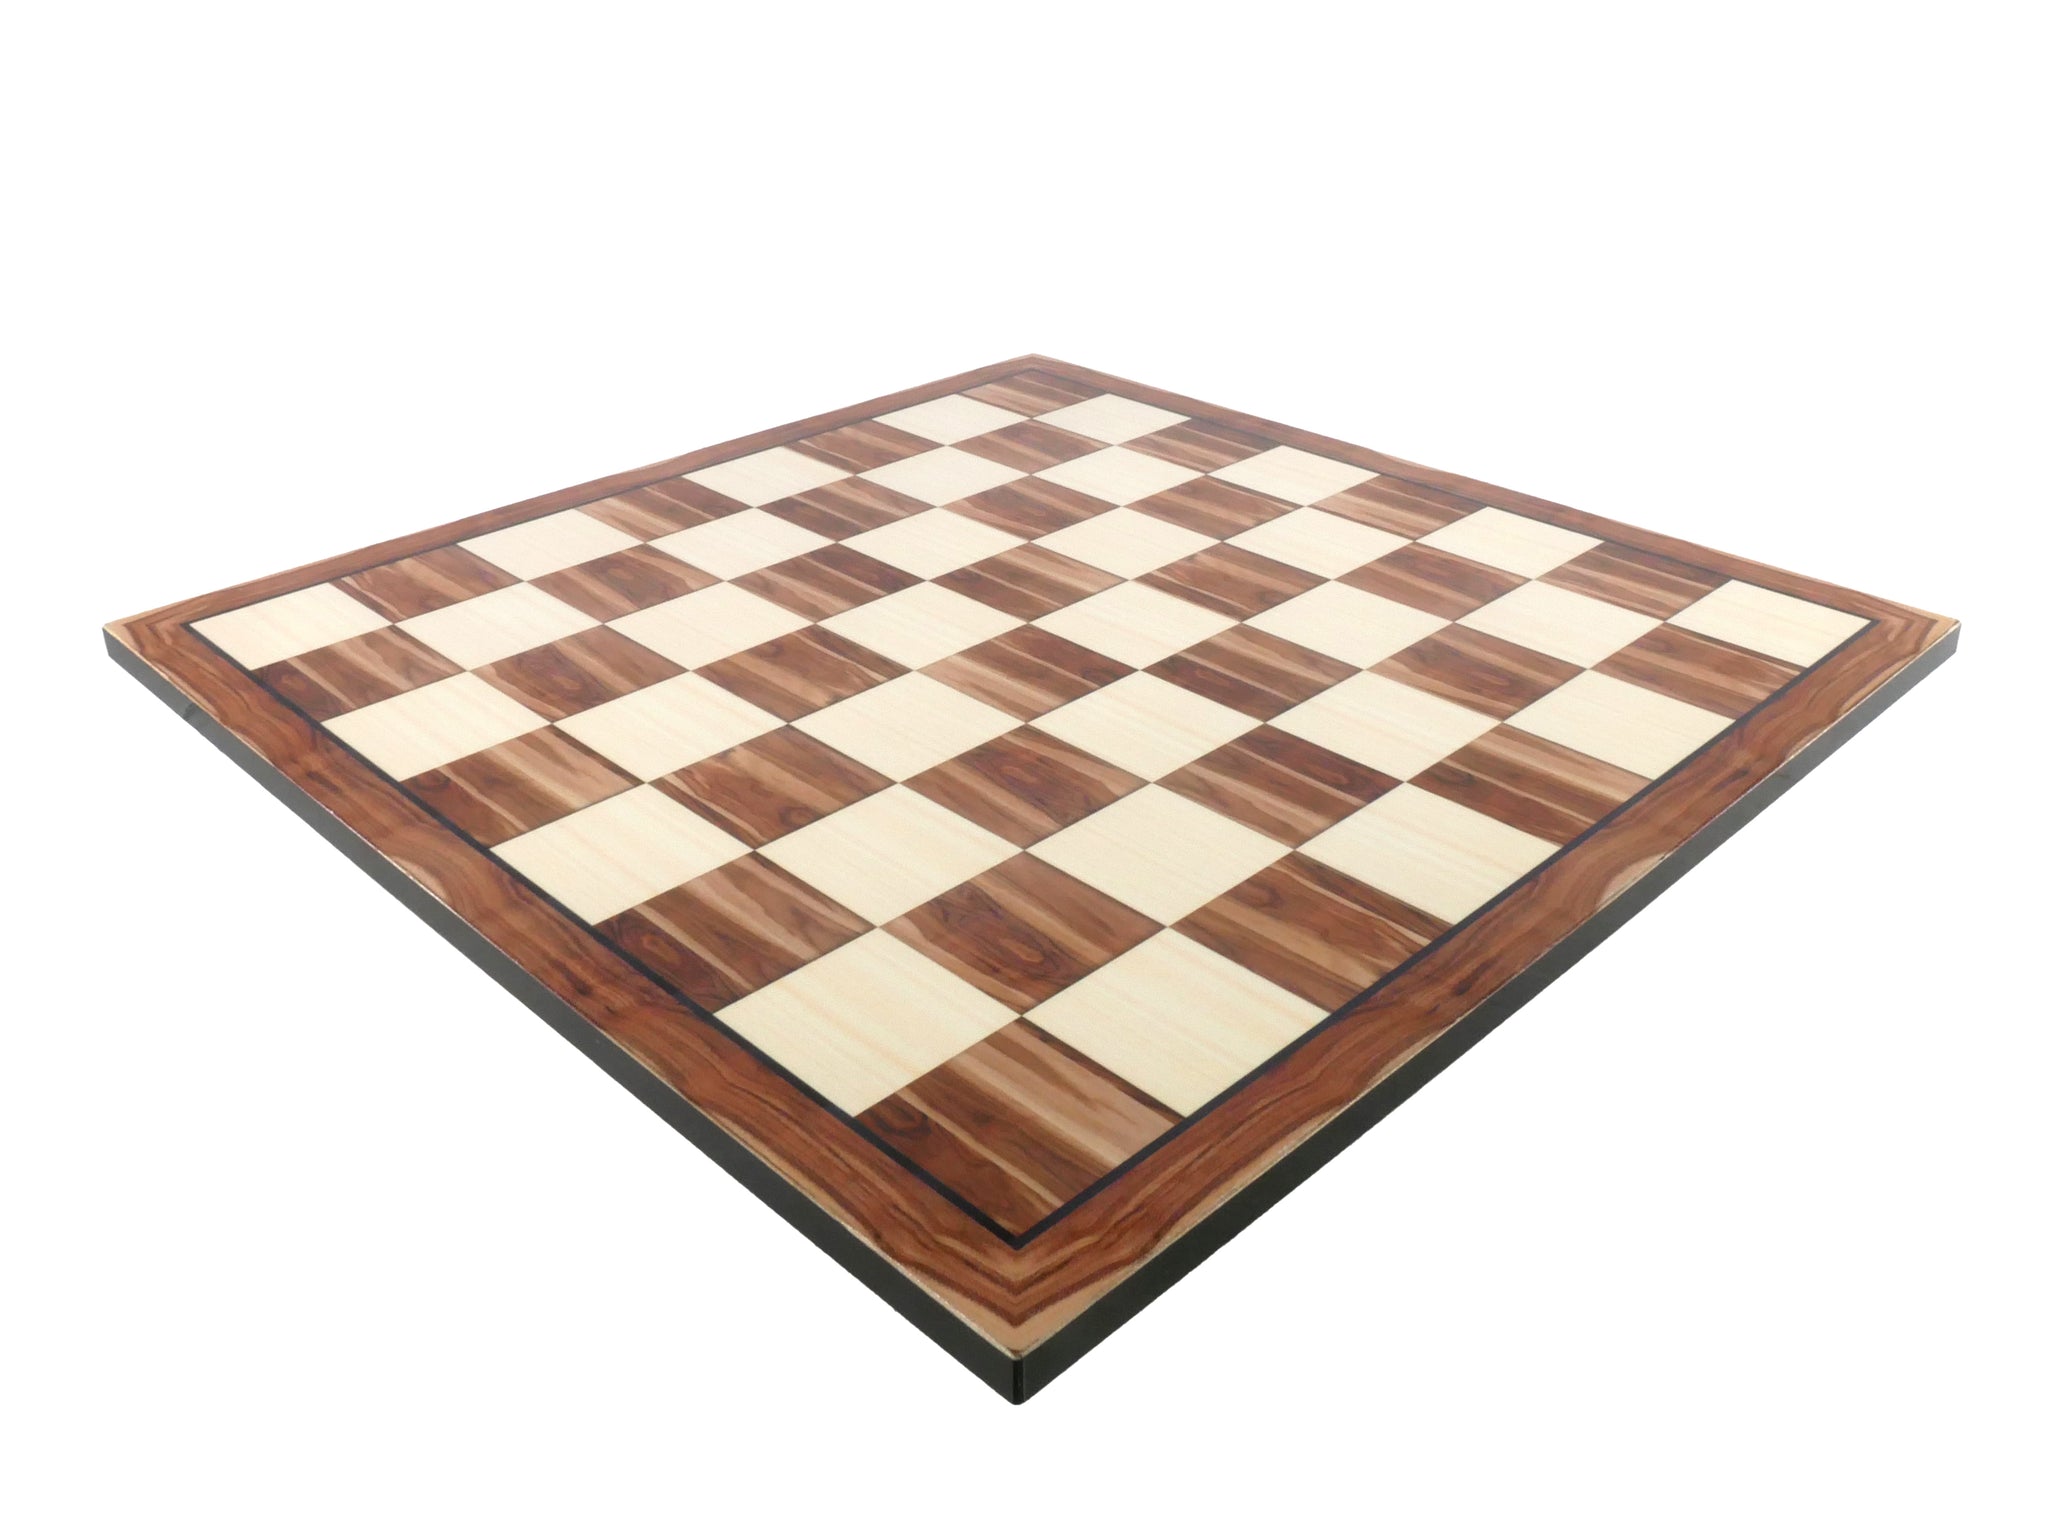 Chessboard - American Walnut Decoupage - 17.25"  - 75417